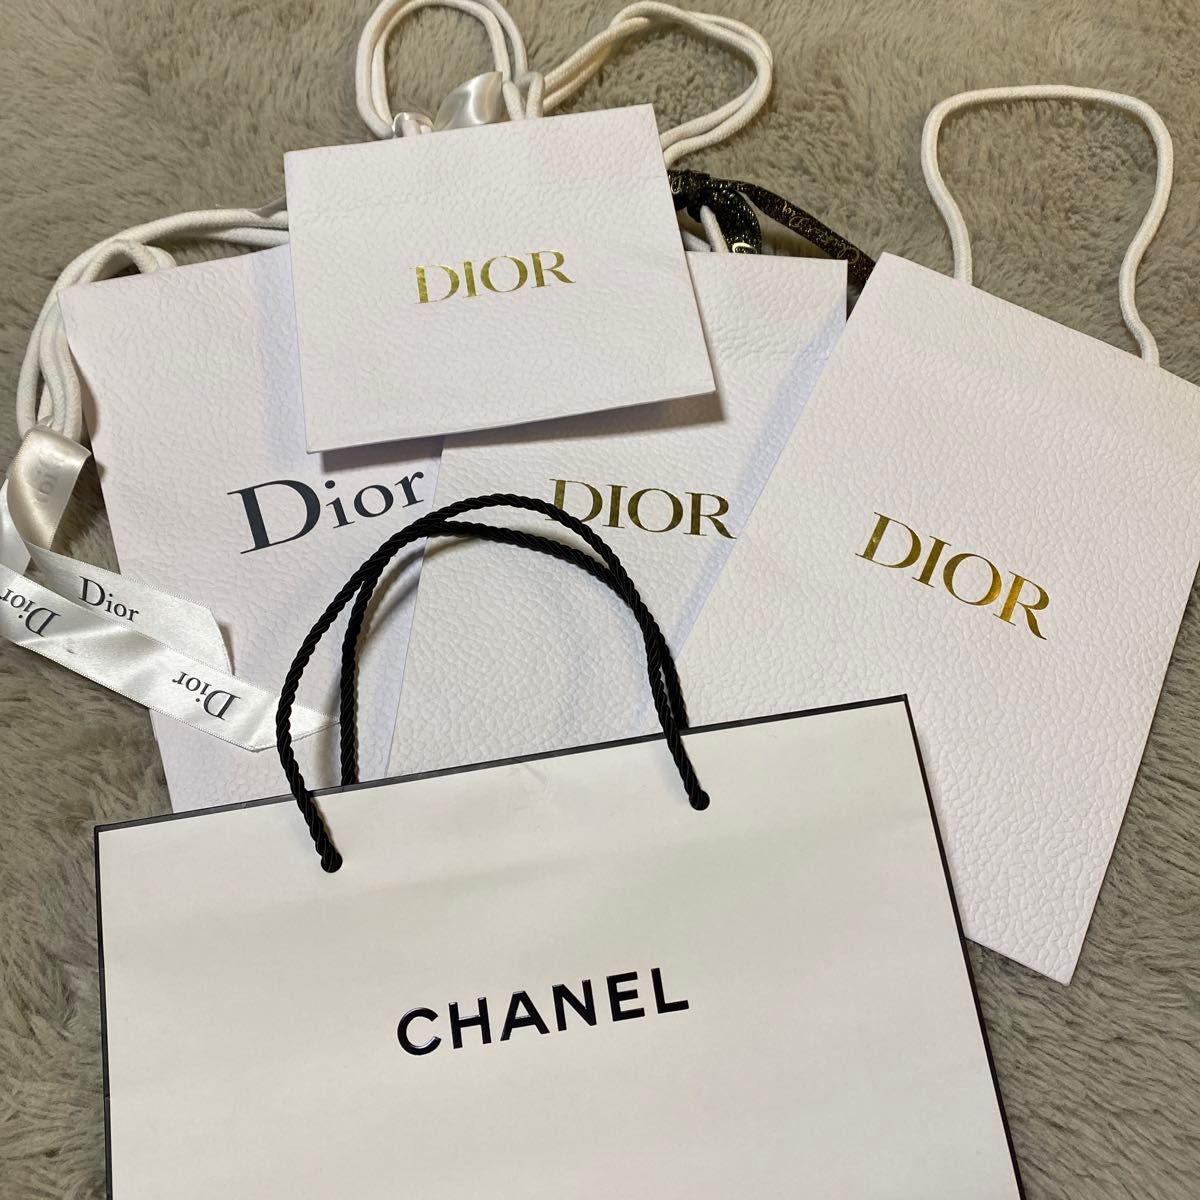 ショッパー 紙袋 Dior ショップ袋 CHANEL シャネル クリスチャンディオール ディオール DIOR ブランド